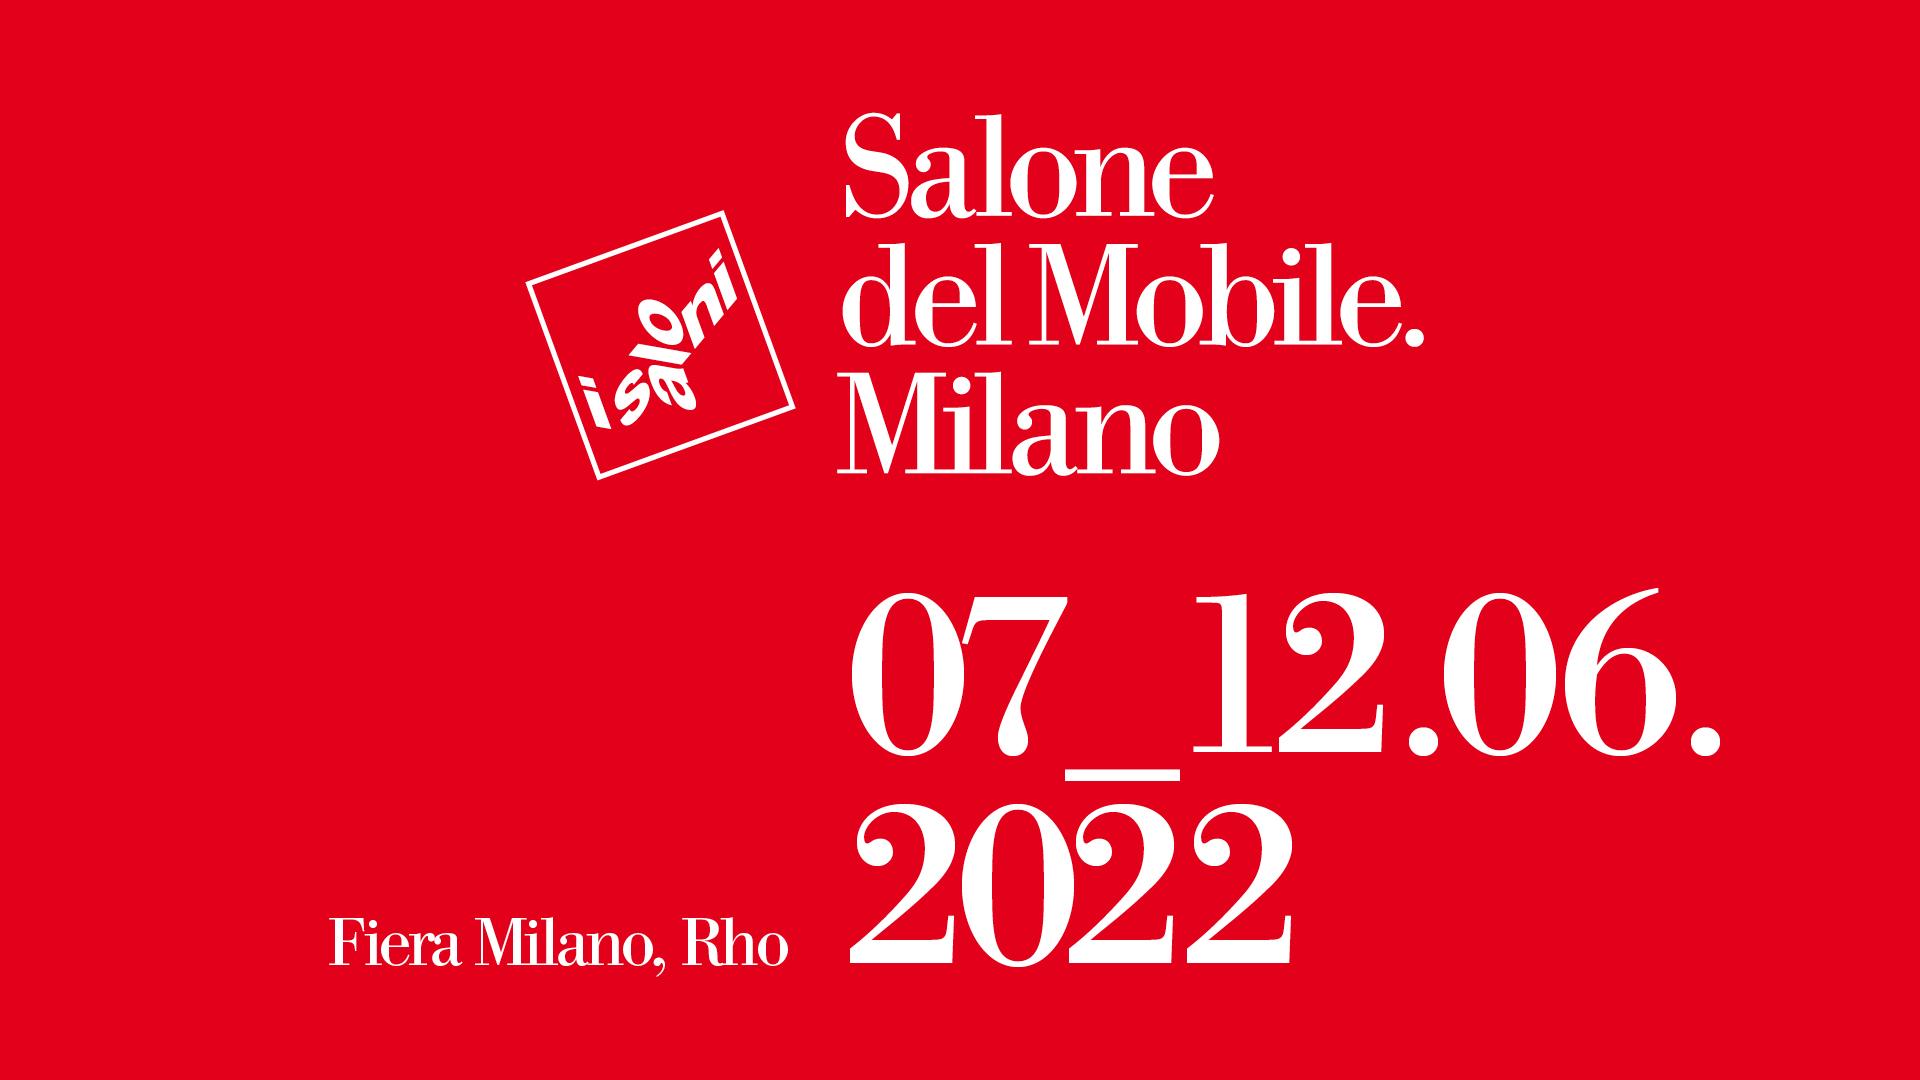 La 60a edizione del Salone del Mobile.Milano slitta a giugno 2022